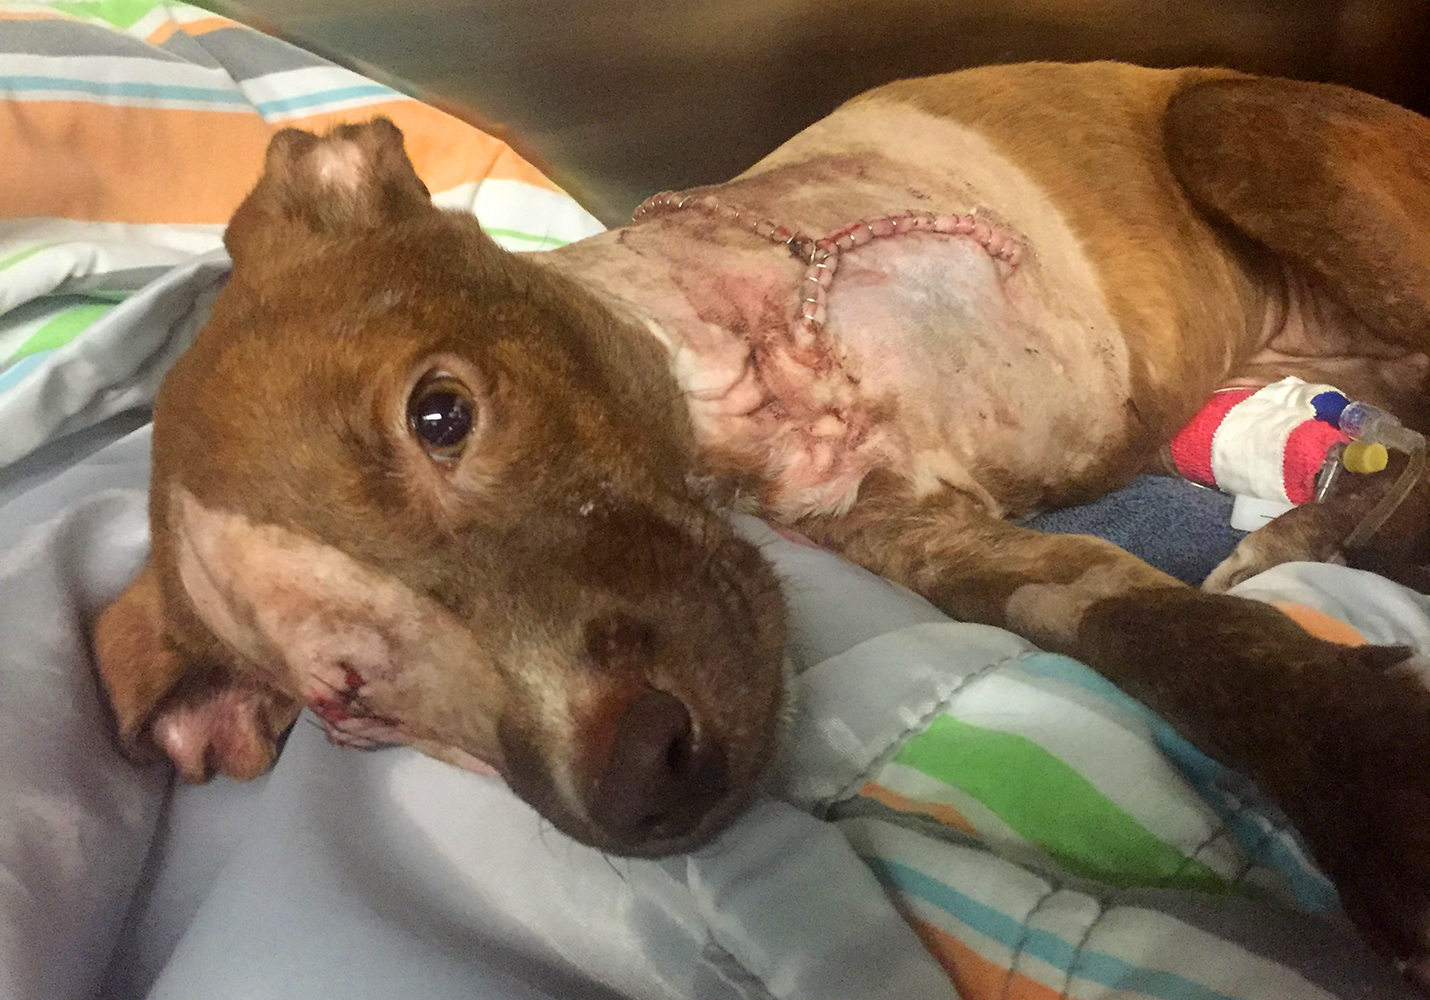 Ele puxou uma faca e cortou completamente a pata deste cachorrinho. Mas este não foi o fim do sofrimento do pobre animal.